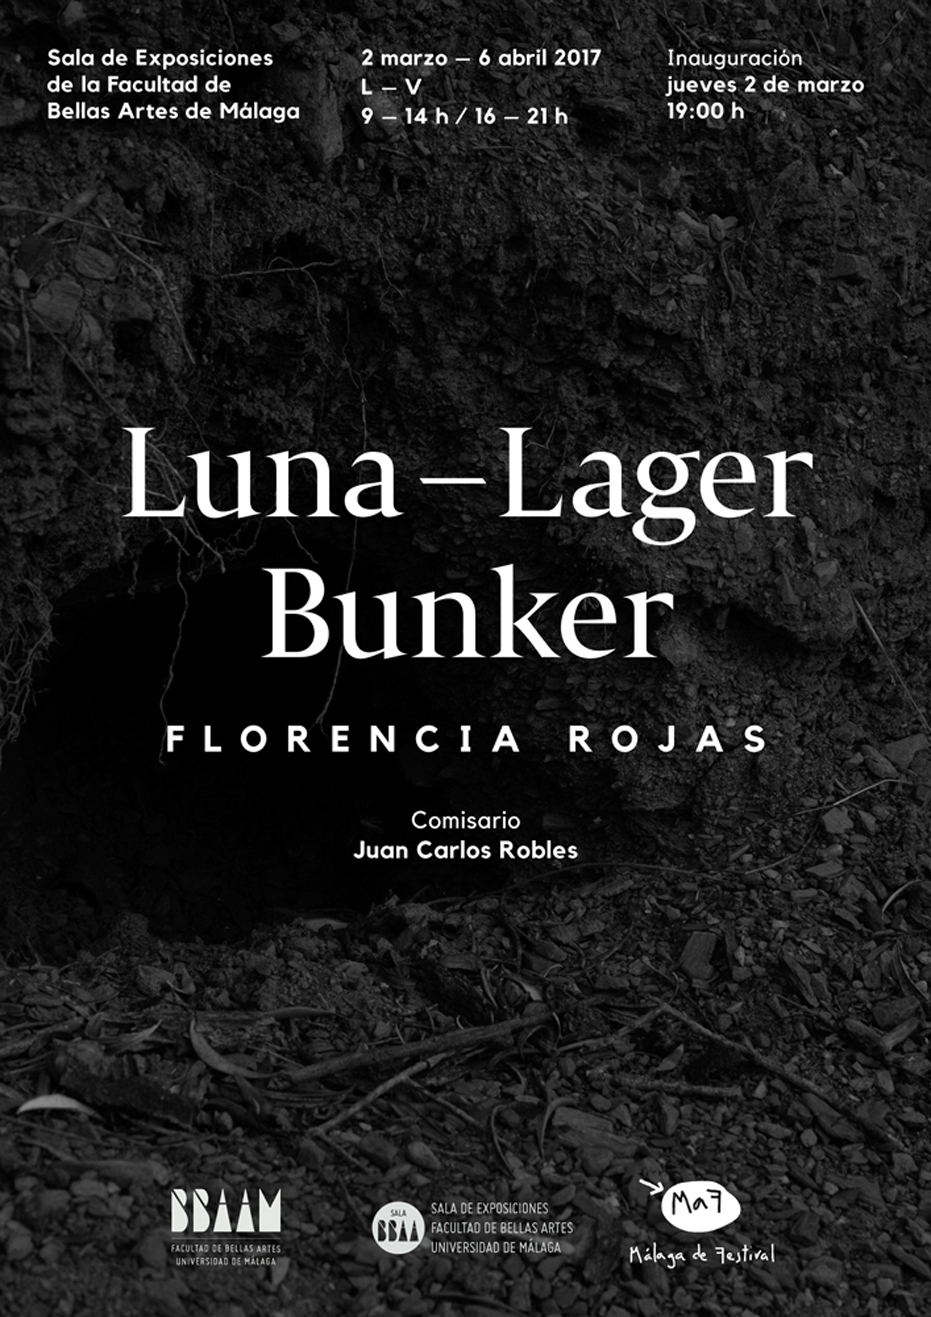 Exposición ‘Luna-Lager Bunker’ Facultad de Bellas Artes